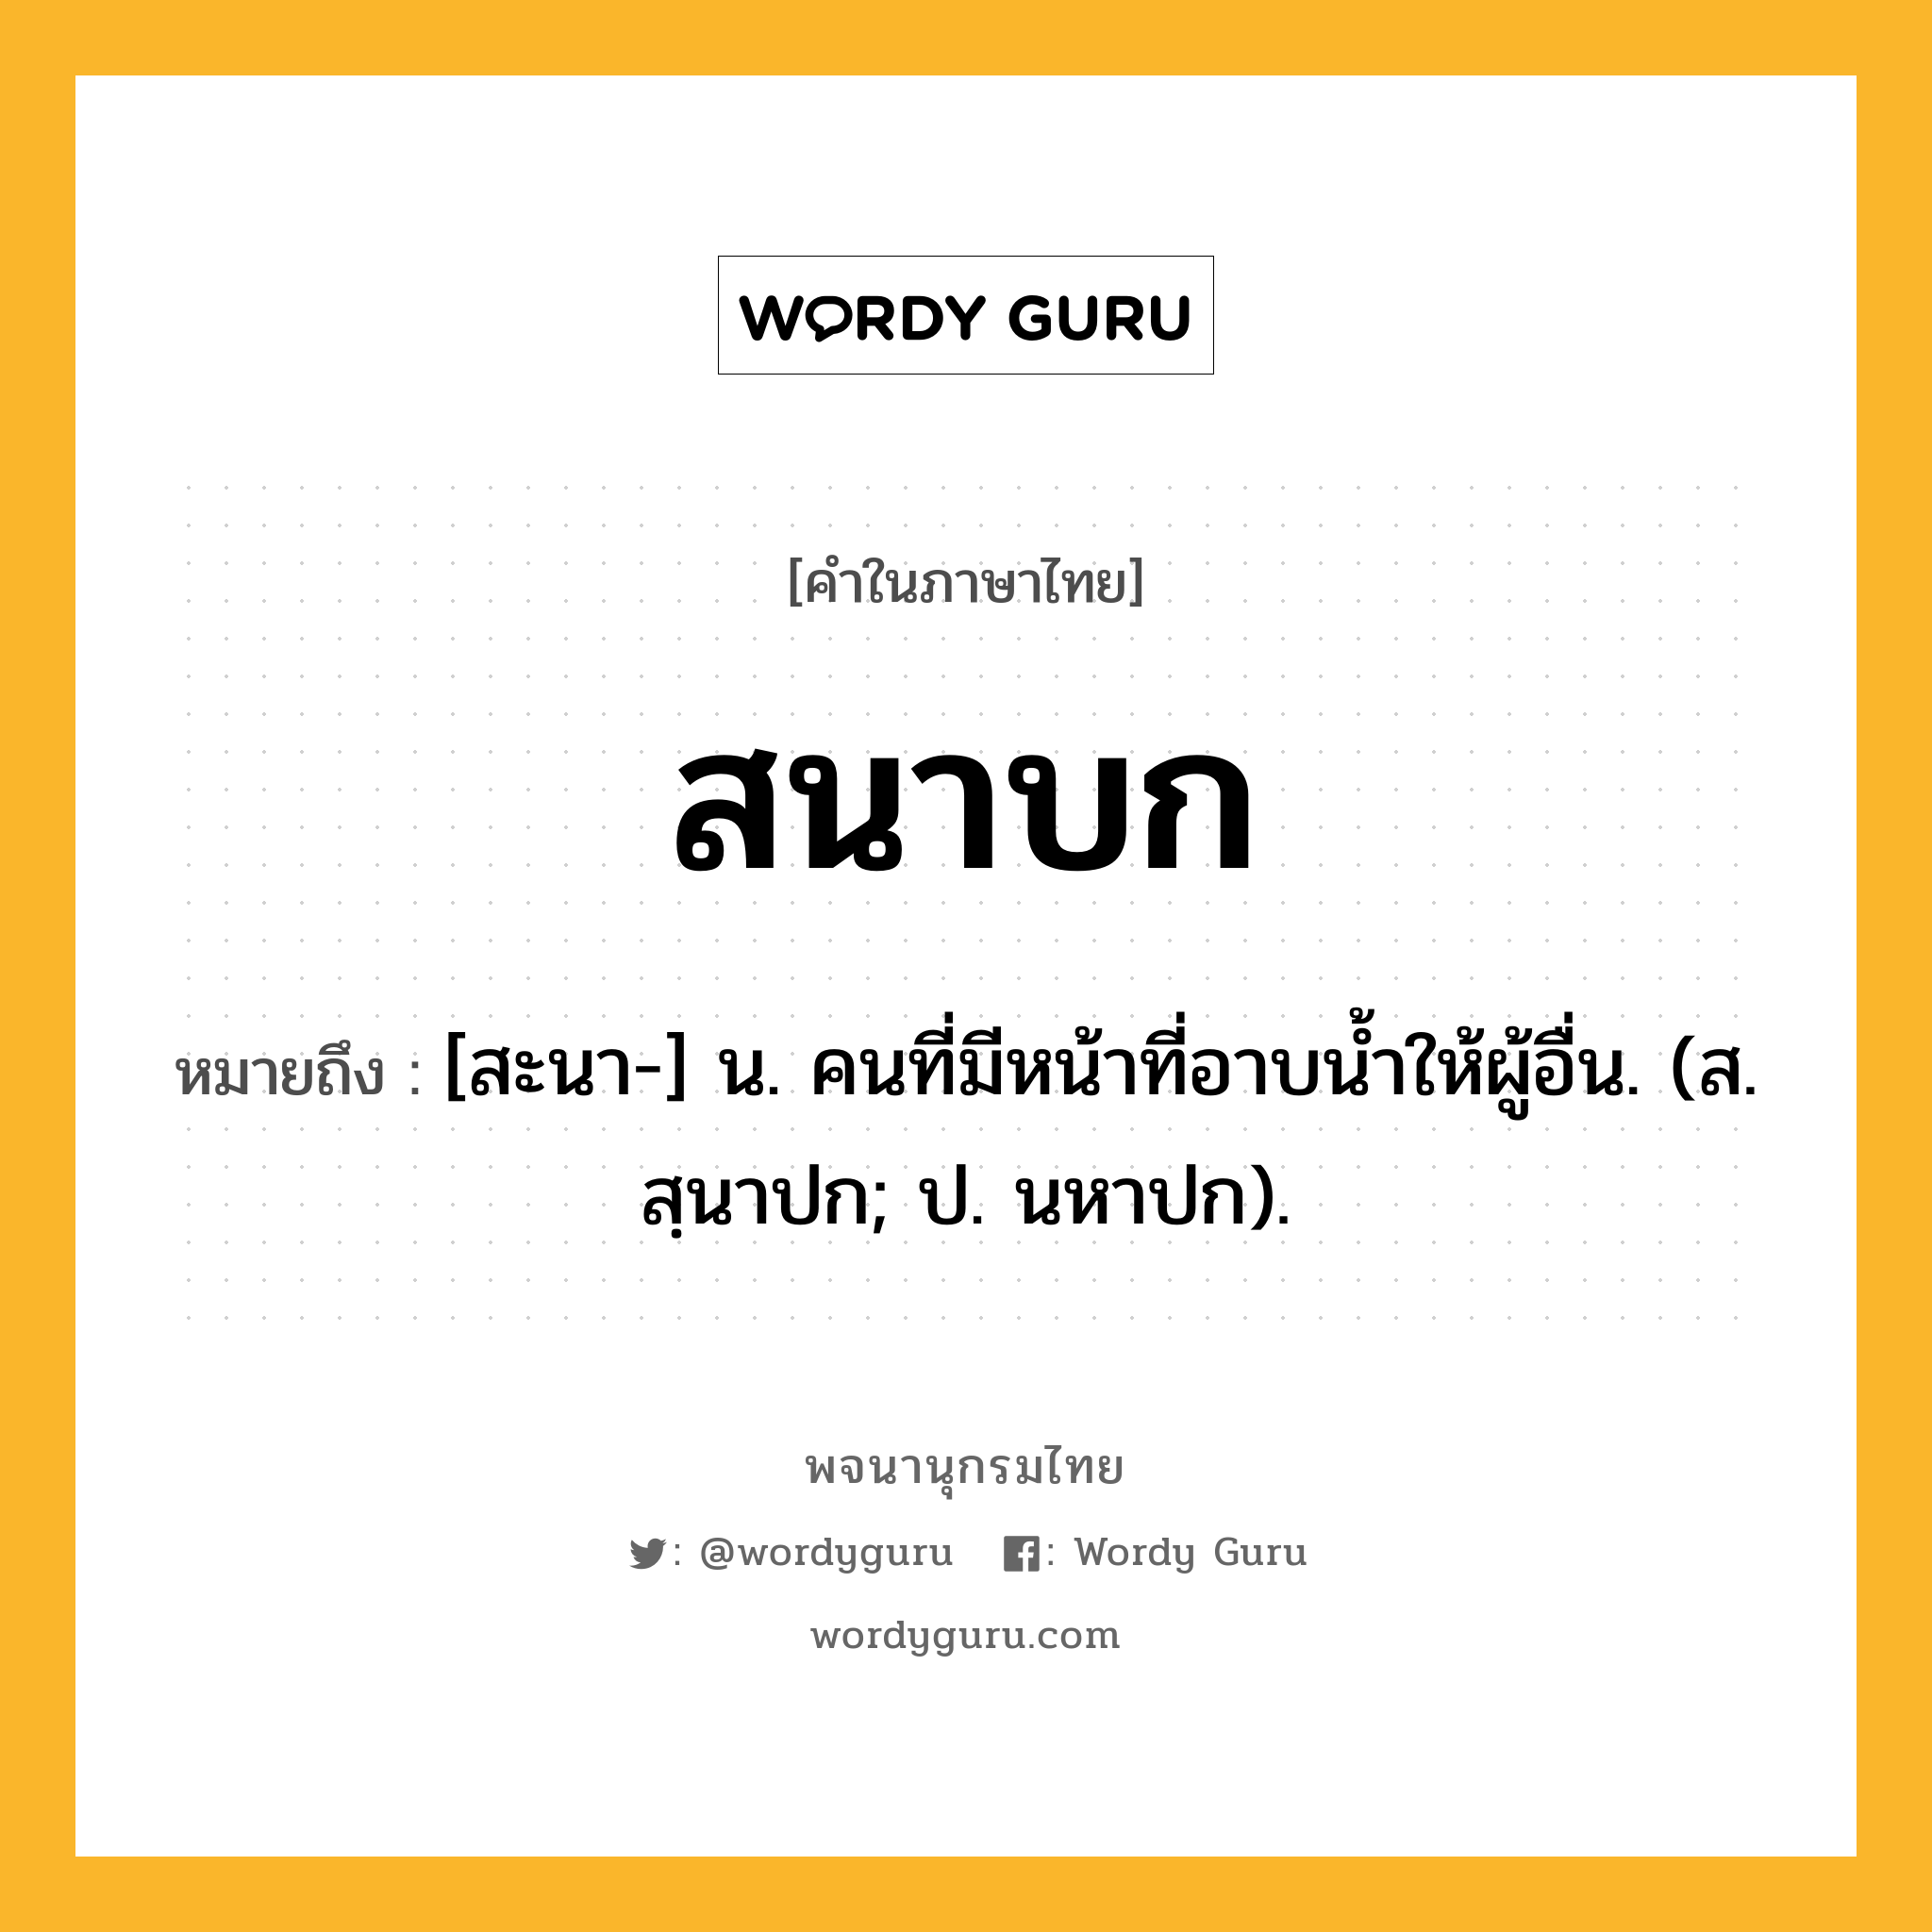 สนาบก หมายถึงอะไร?, คำในภาษาไทย สนาบก หมายถึง [สะนา-] น. คนที่มีหน้าที่อาบนํ้าให้ผู้อื่น. (ส. สฺนาปก; ป. นหาปก).